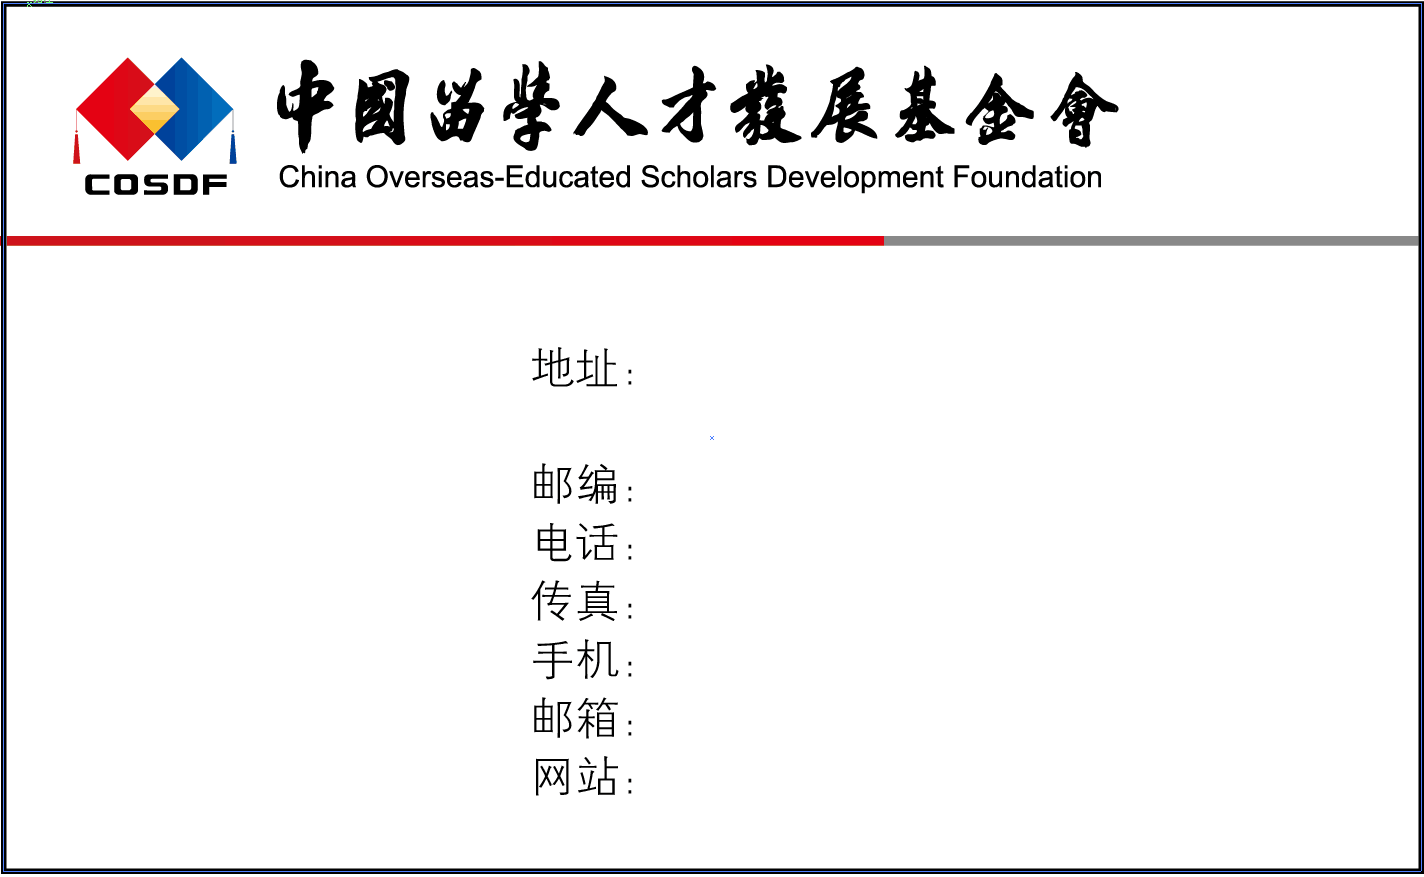 关于中国留学人才发展基金会名片印制、使用管理的公告